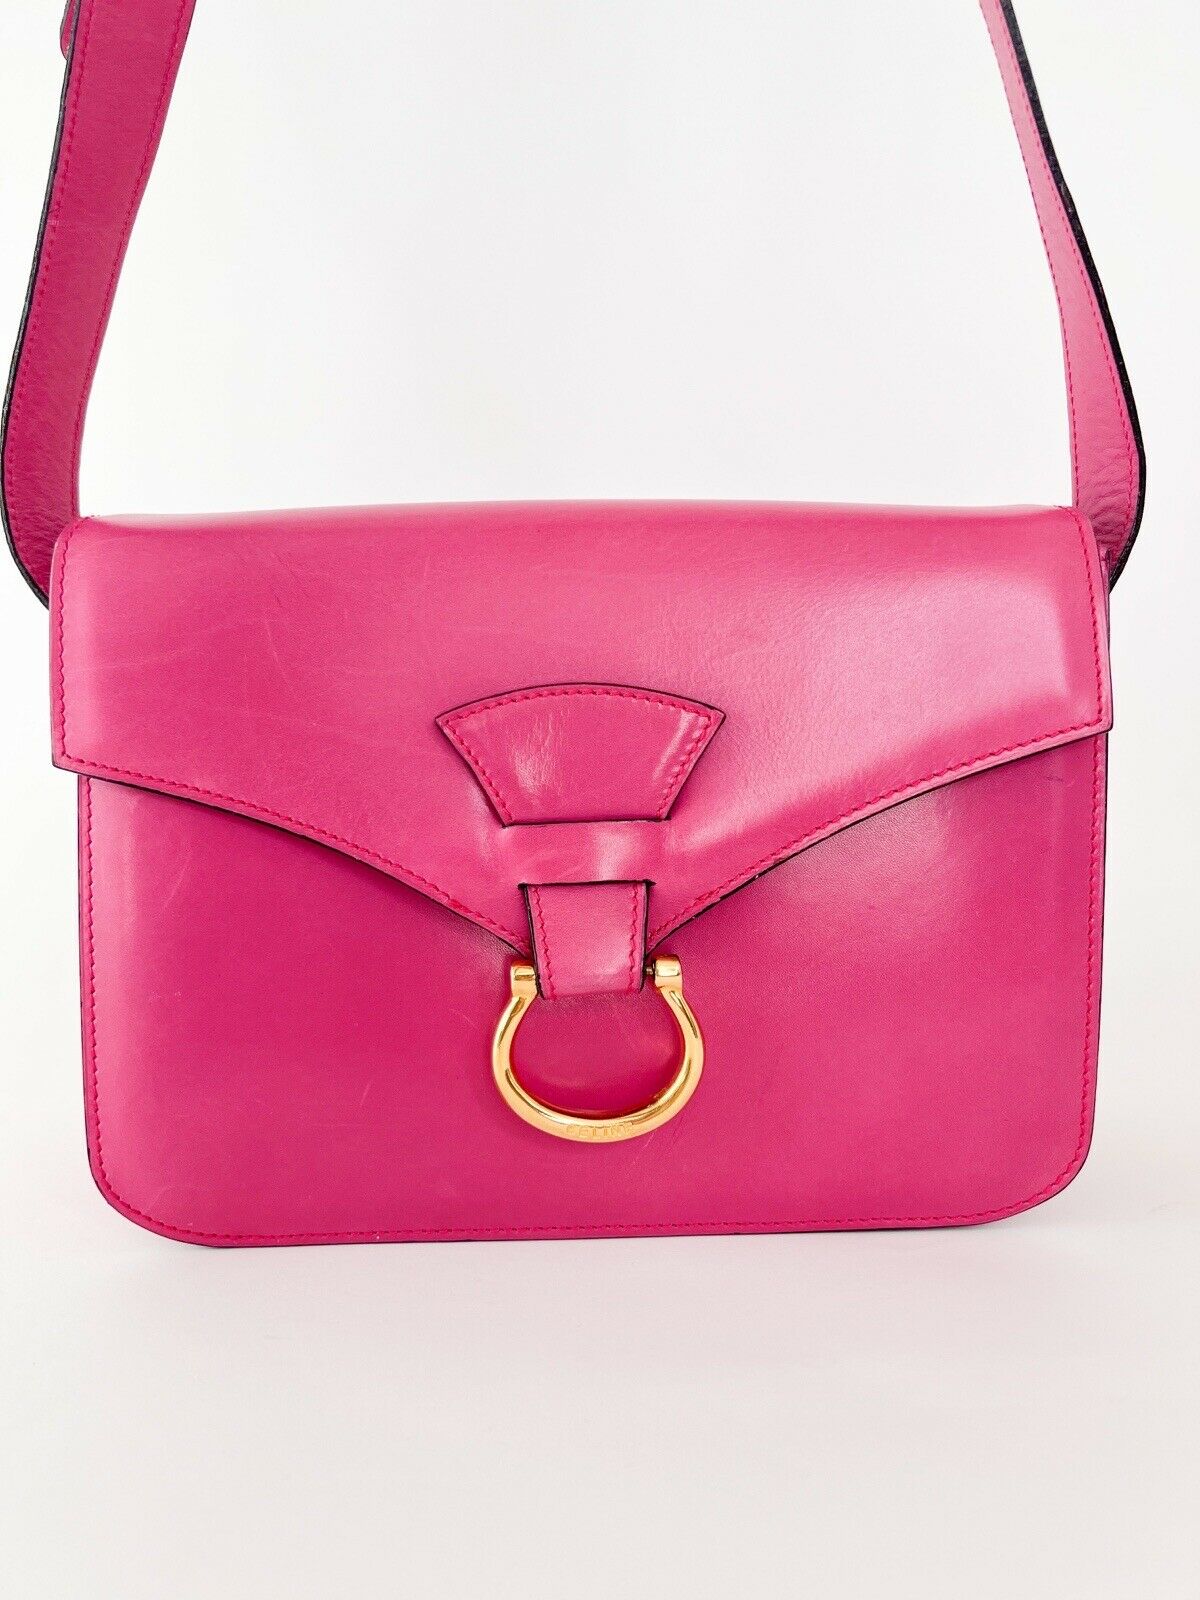 【SOLD OUT】CELINE Leather Shoulder Bag Crossbody Bag Pink Made in Italy Vintage